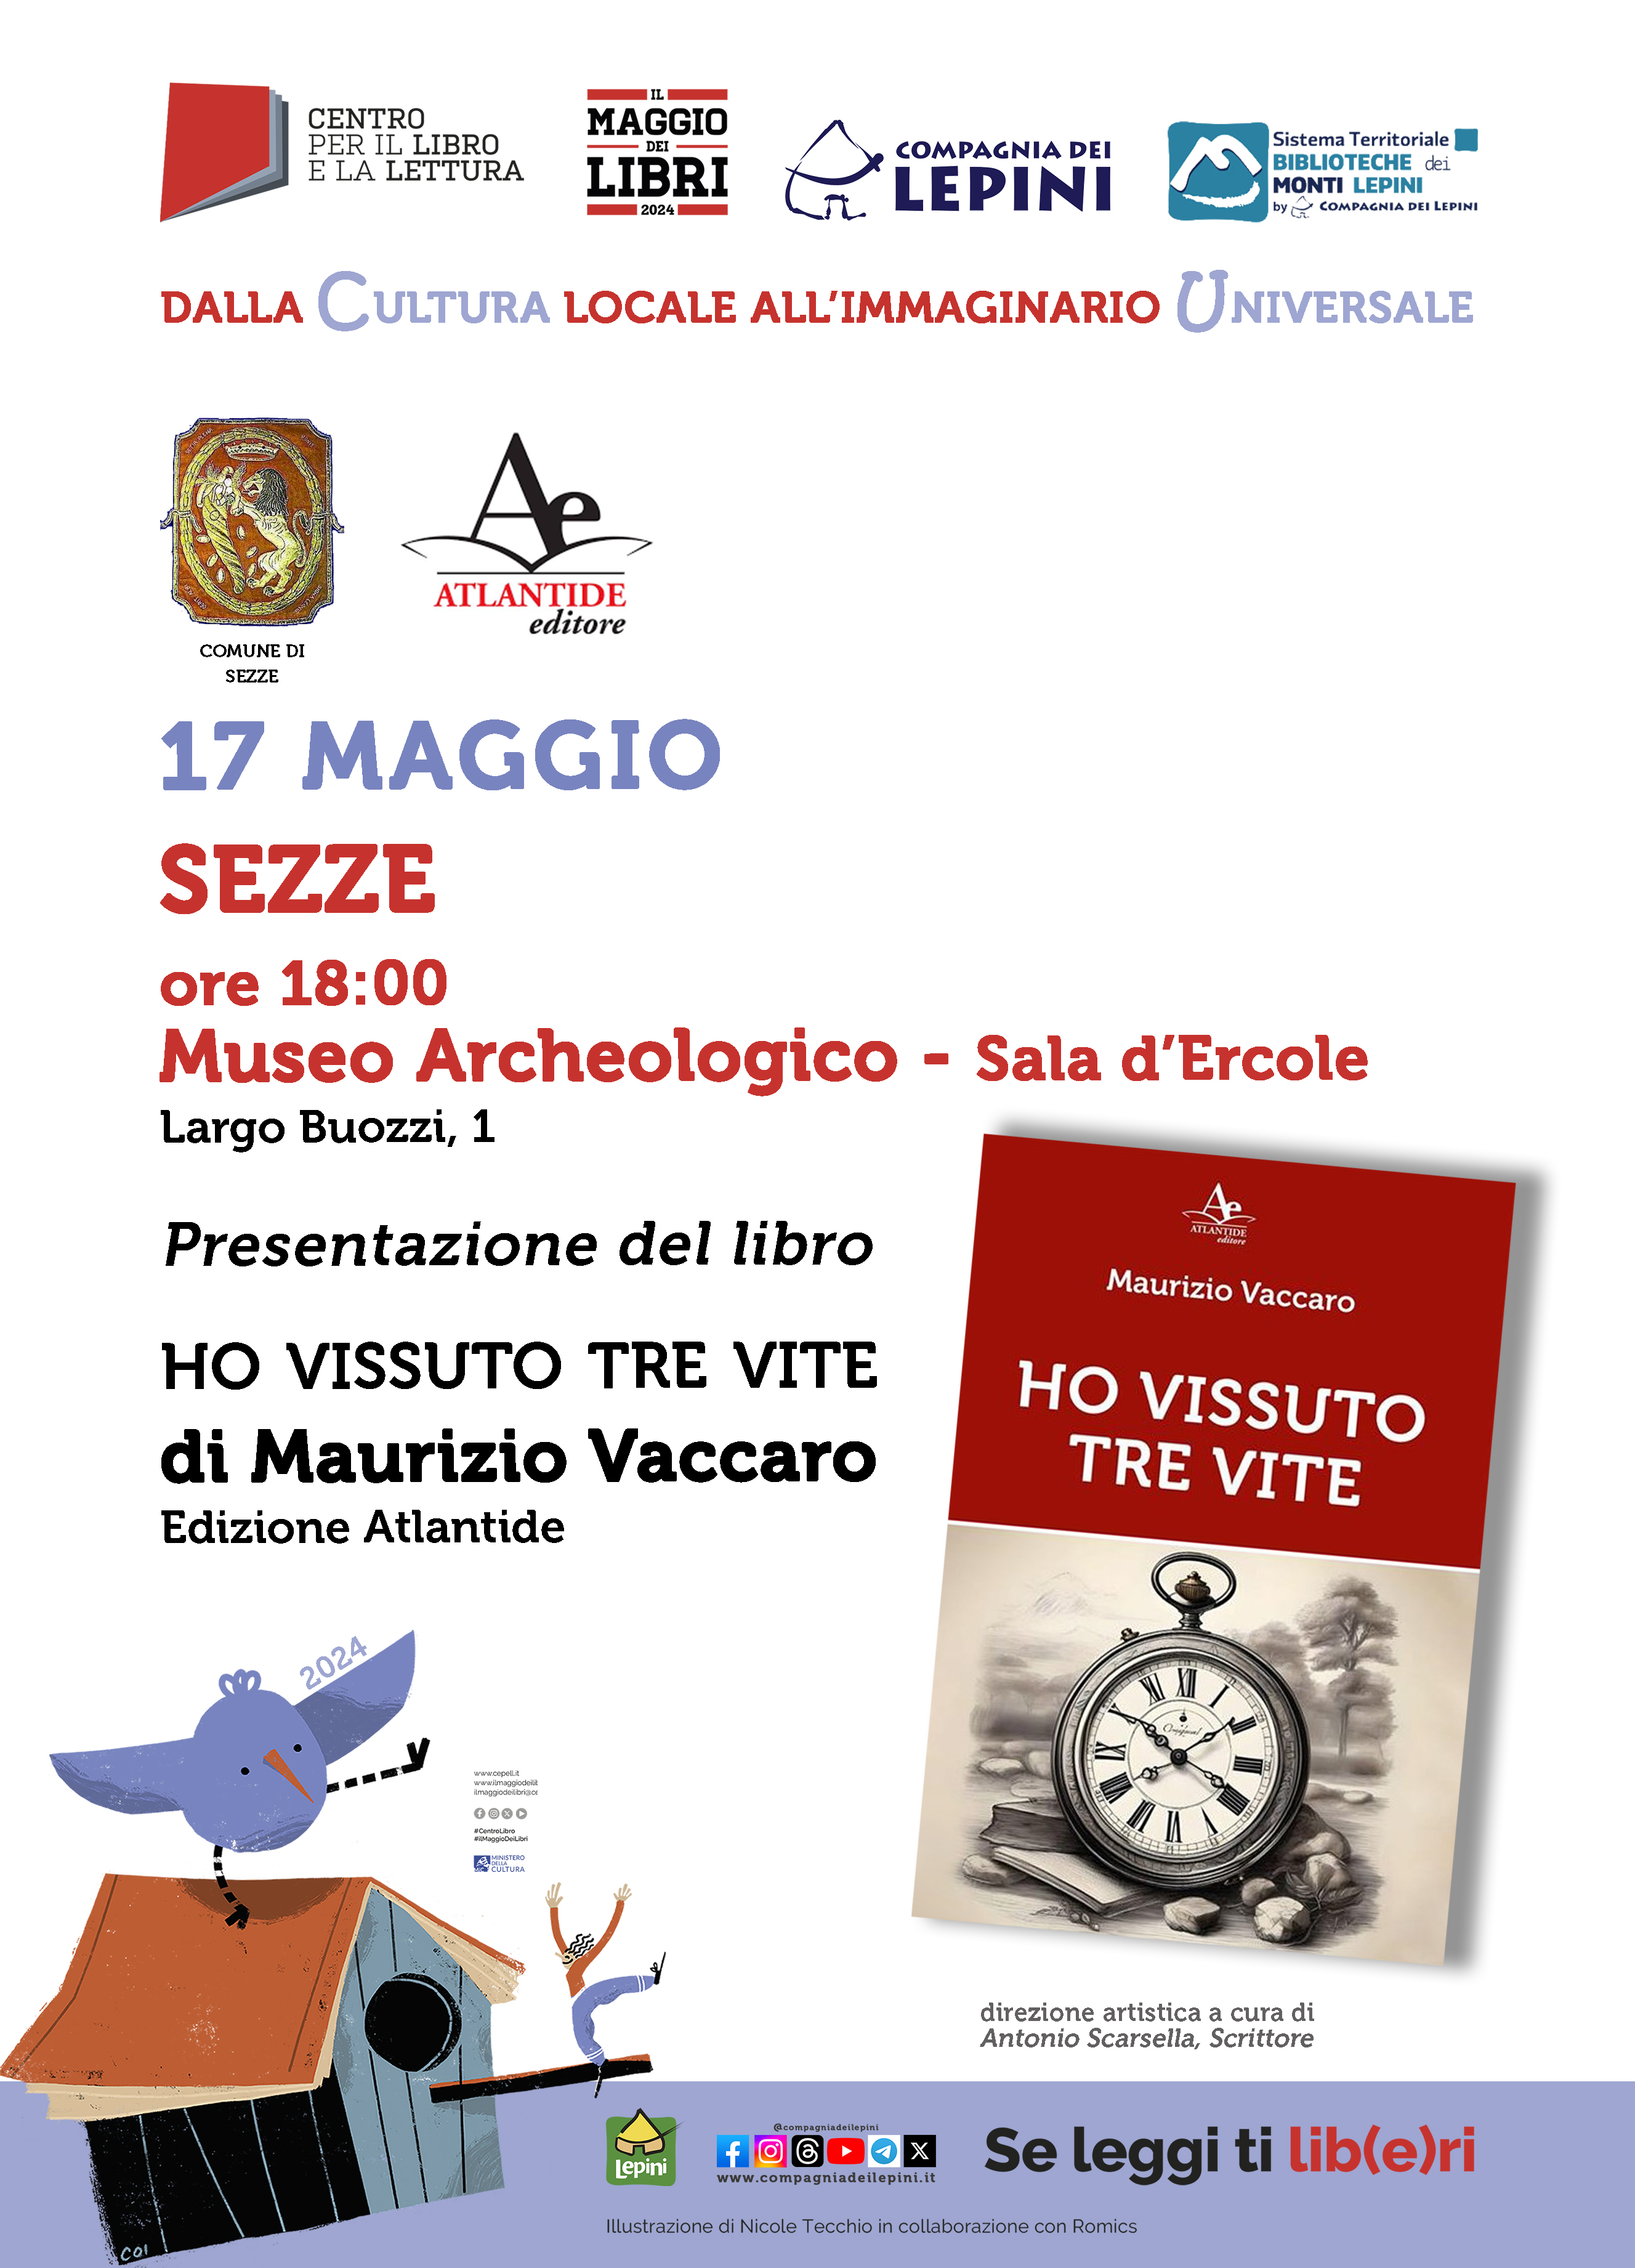 Il Maggio dei Libri a Sezze: Presentazione del libro "Ho vissuto tre vite" di Maurizio Vaccaro @ Museo Archeologico- Sala d'Ercole